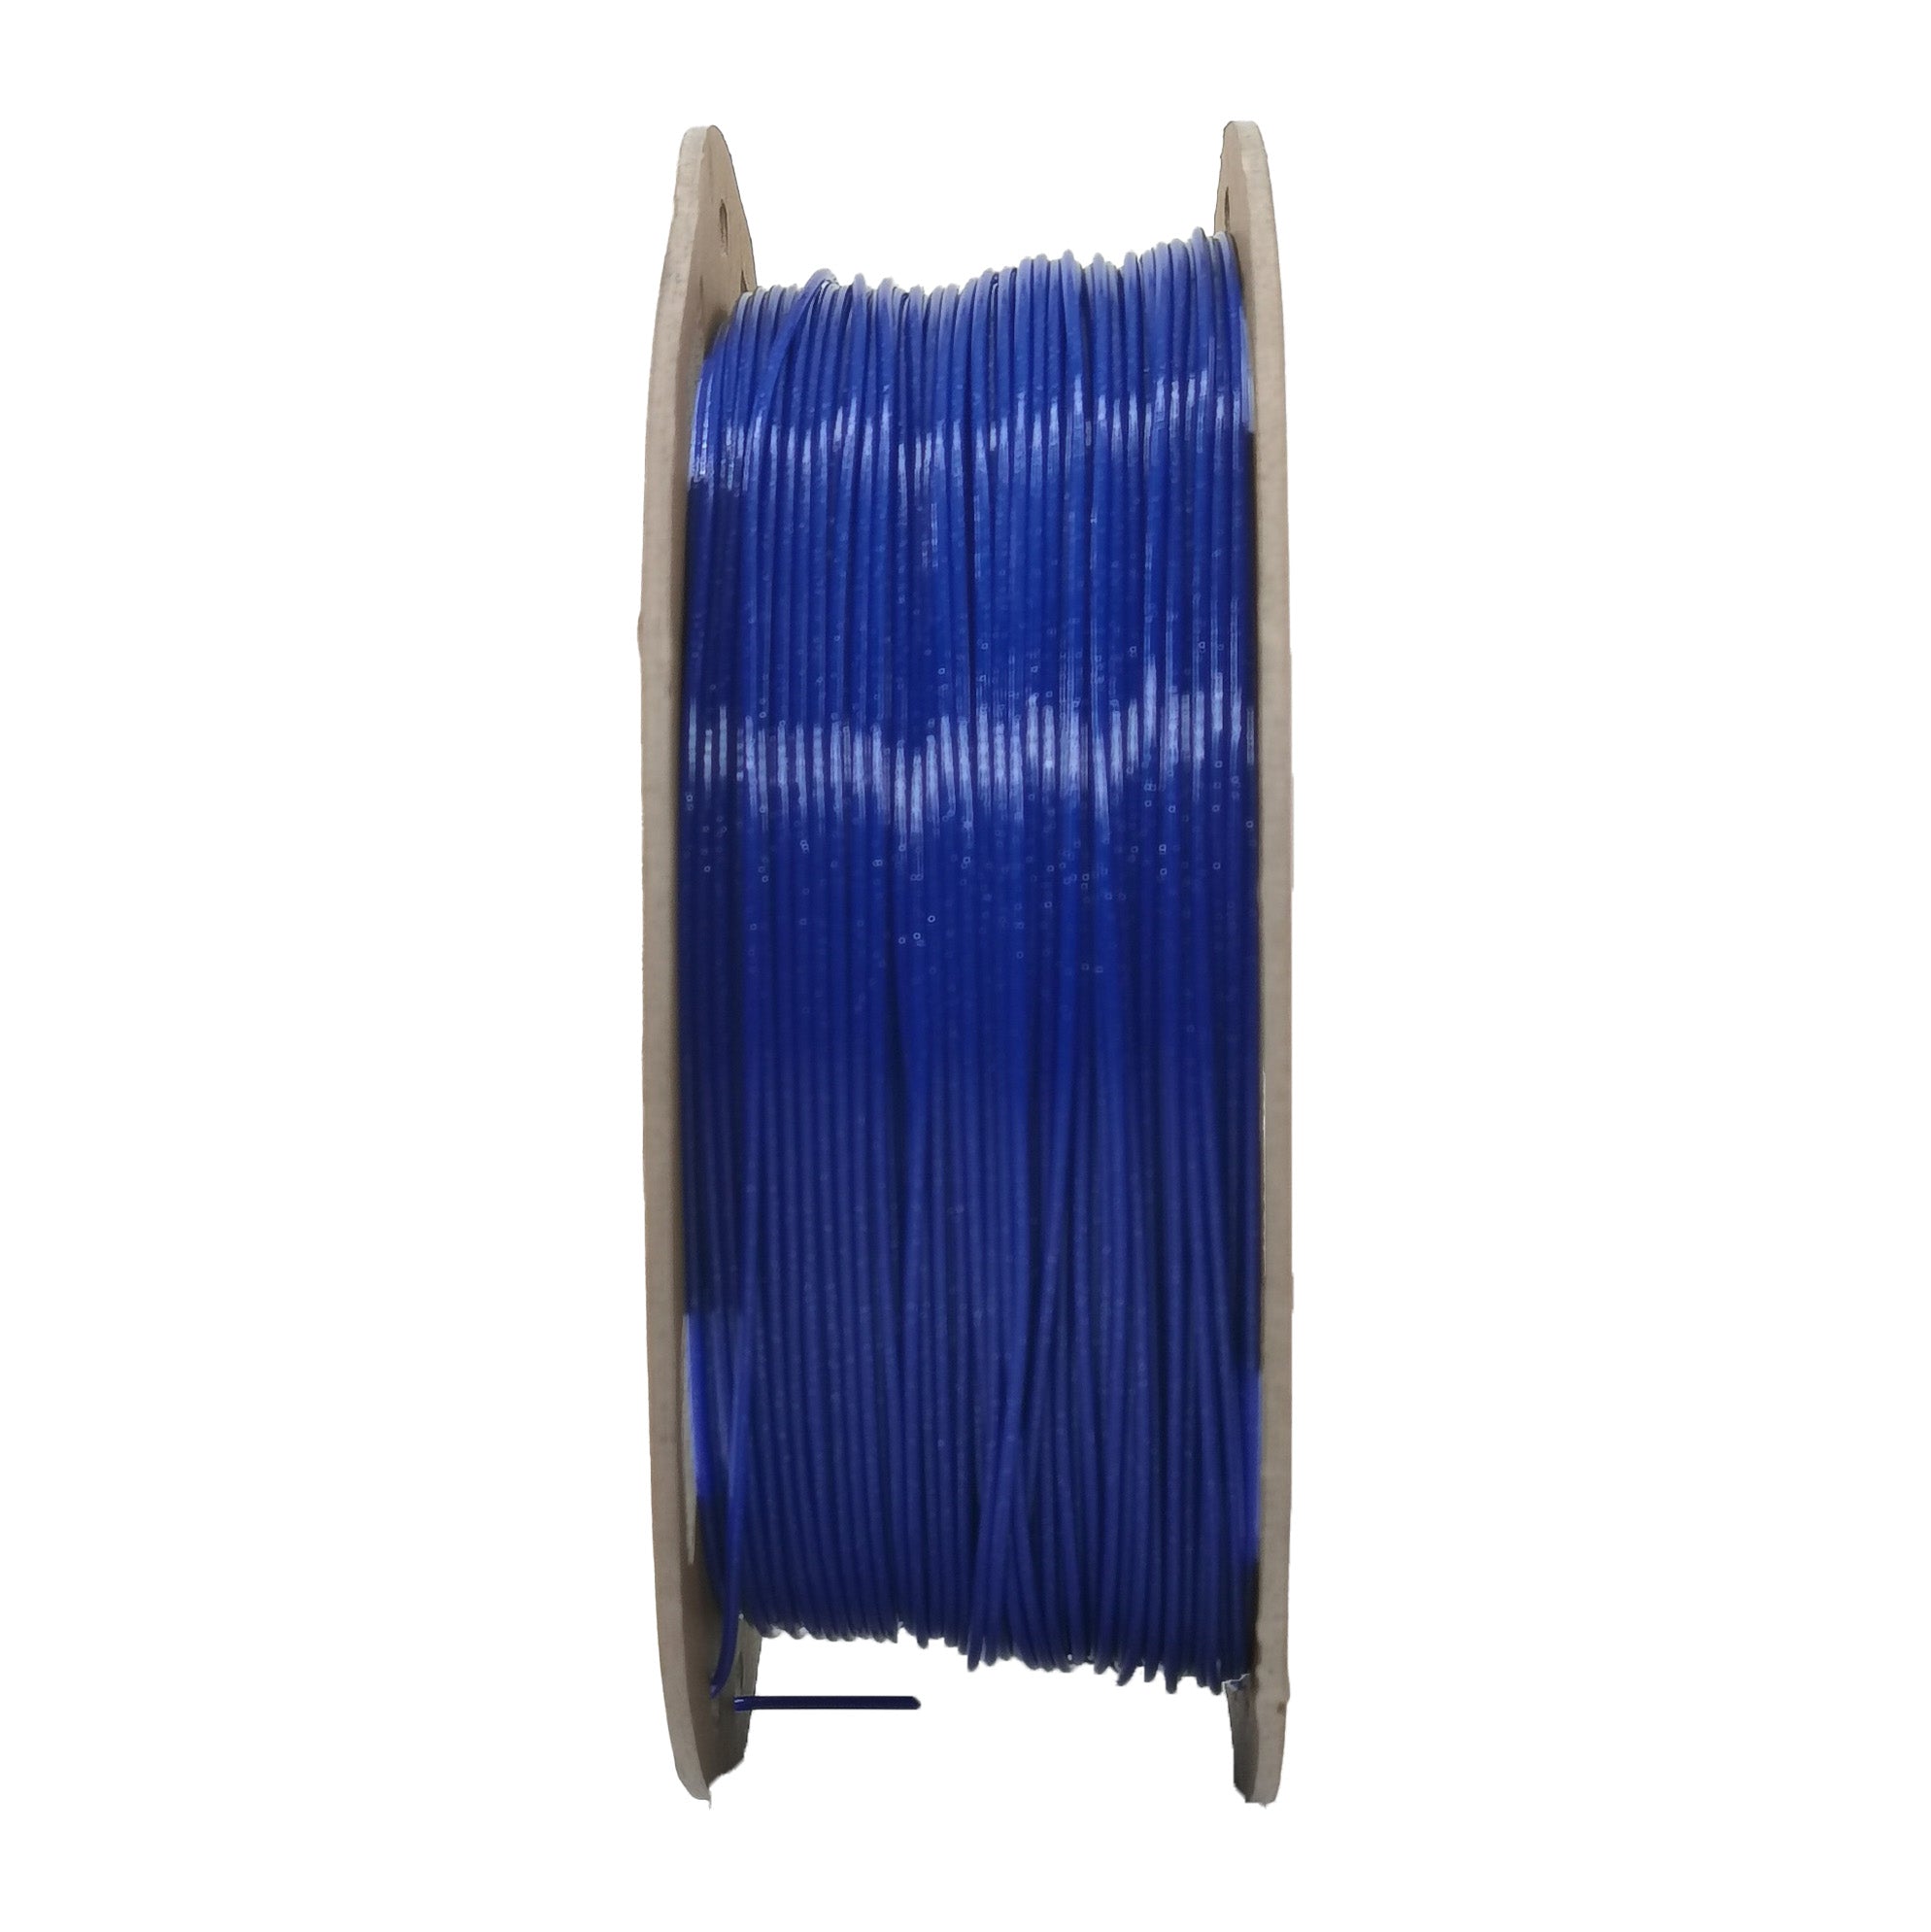 DREMC Sparkle PETG Filament 1.75mm 1kg